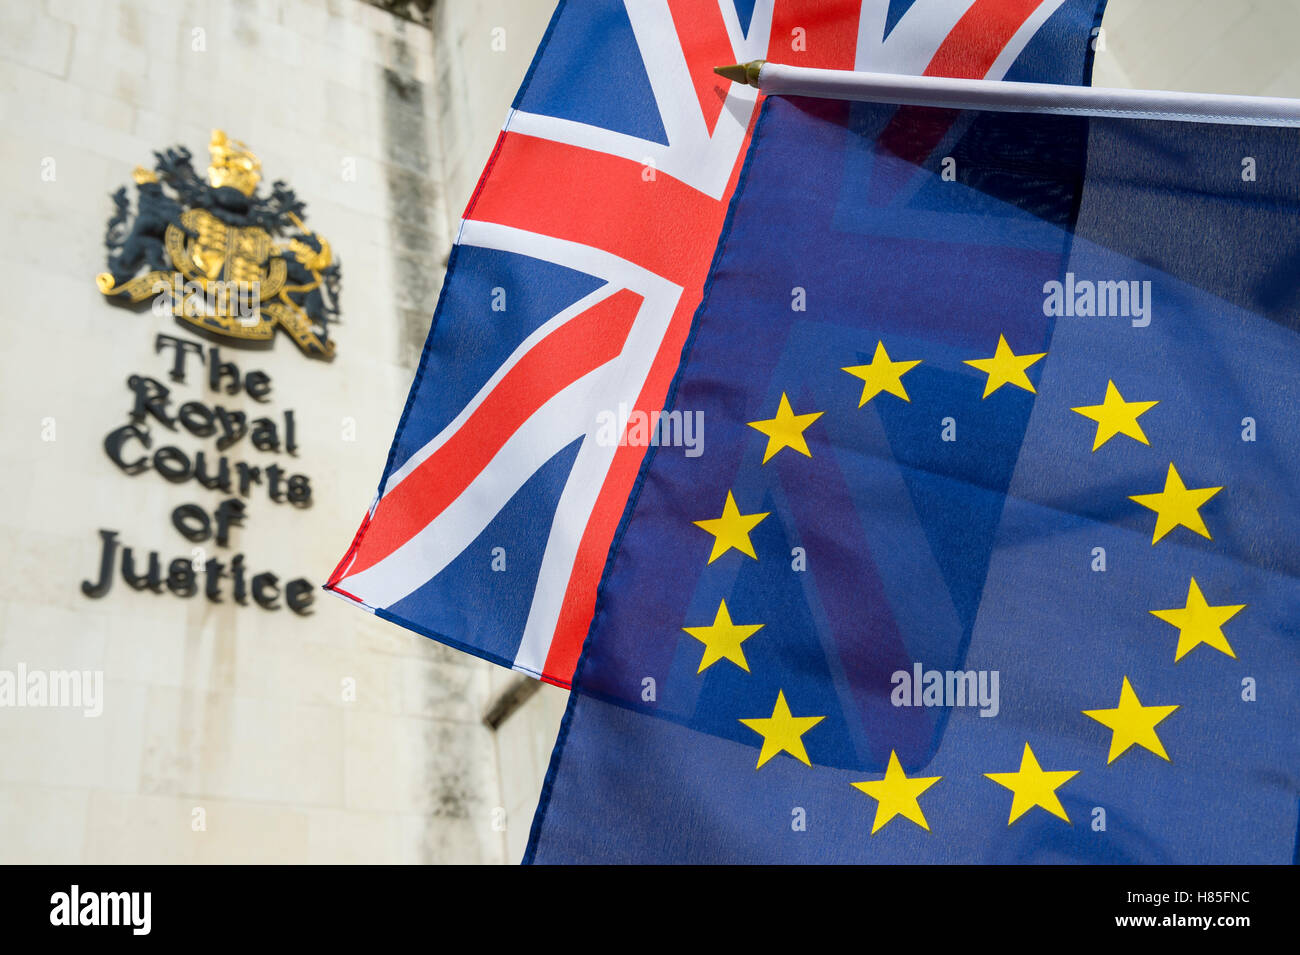 EU und Union Jack Fahnen vor der Royal Courts of Justice öffentliche Gebäude in London, UK Stockfoto